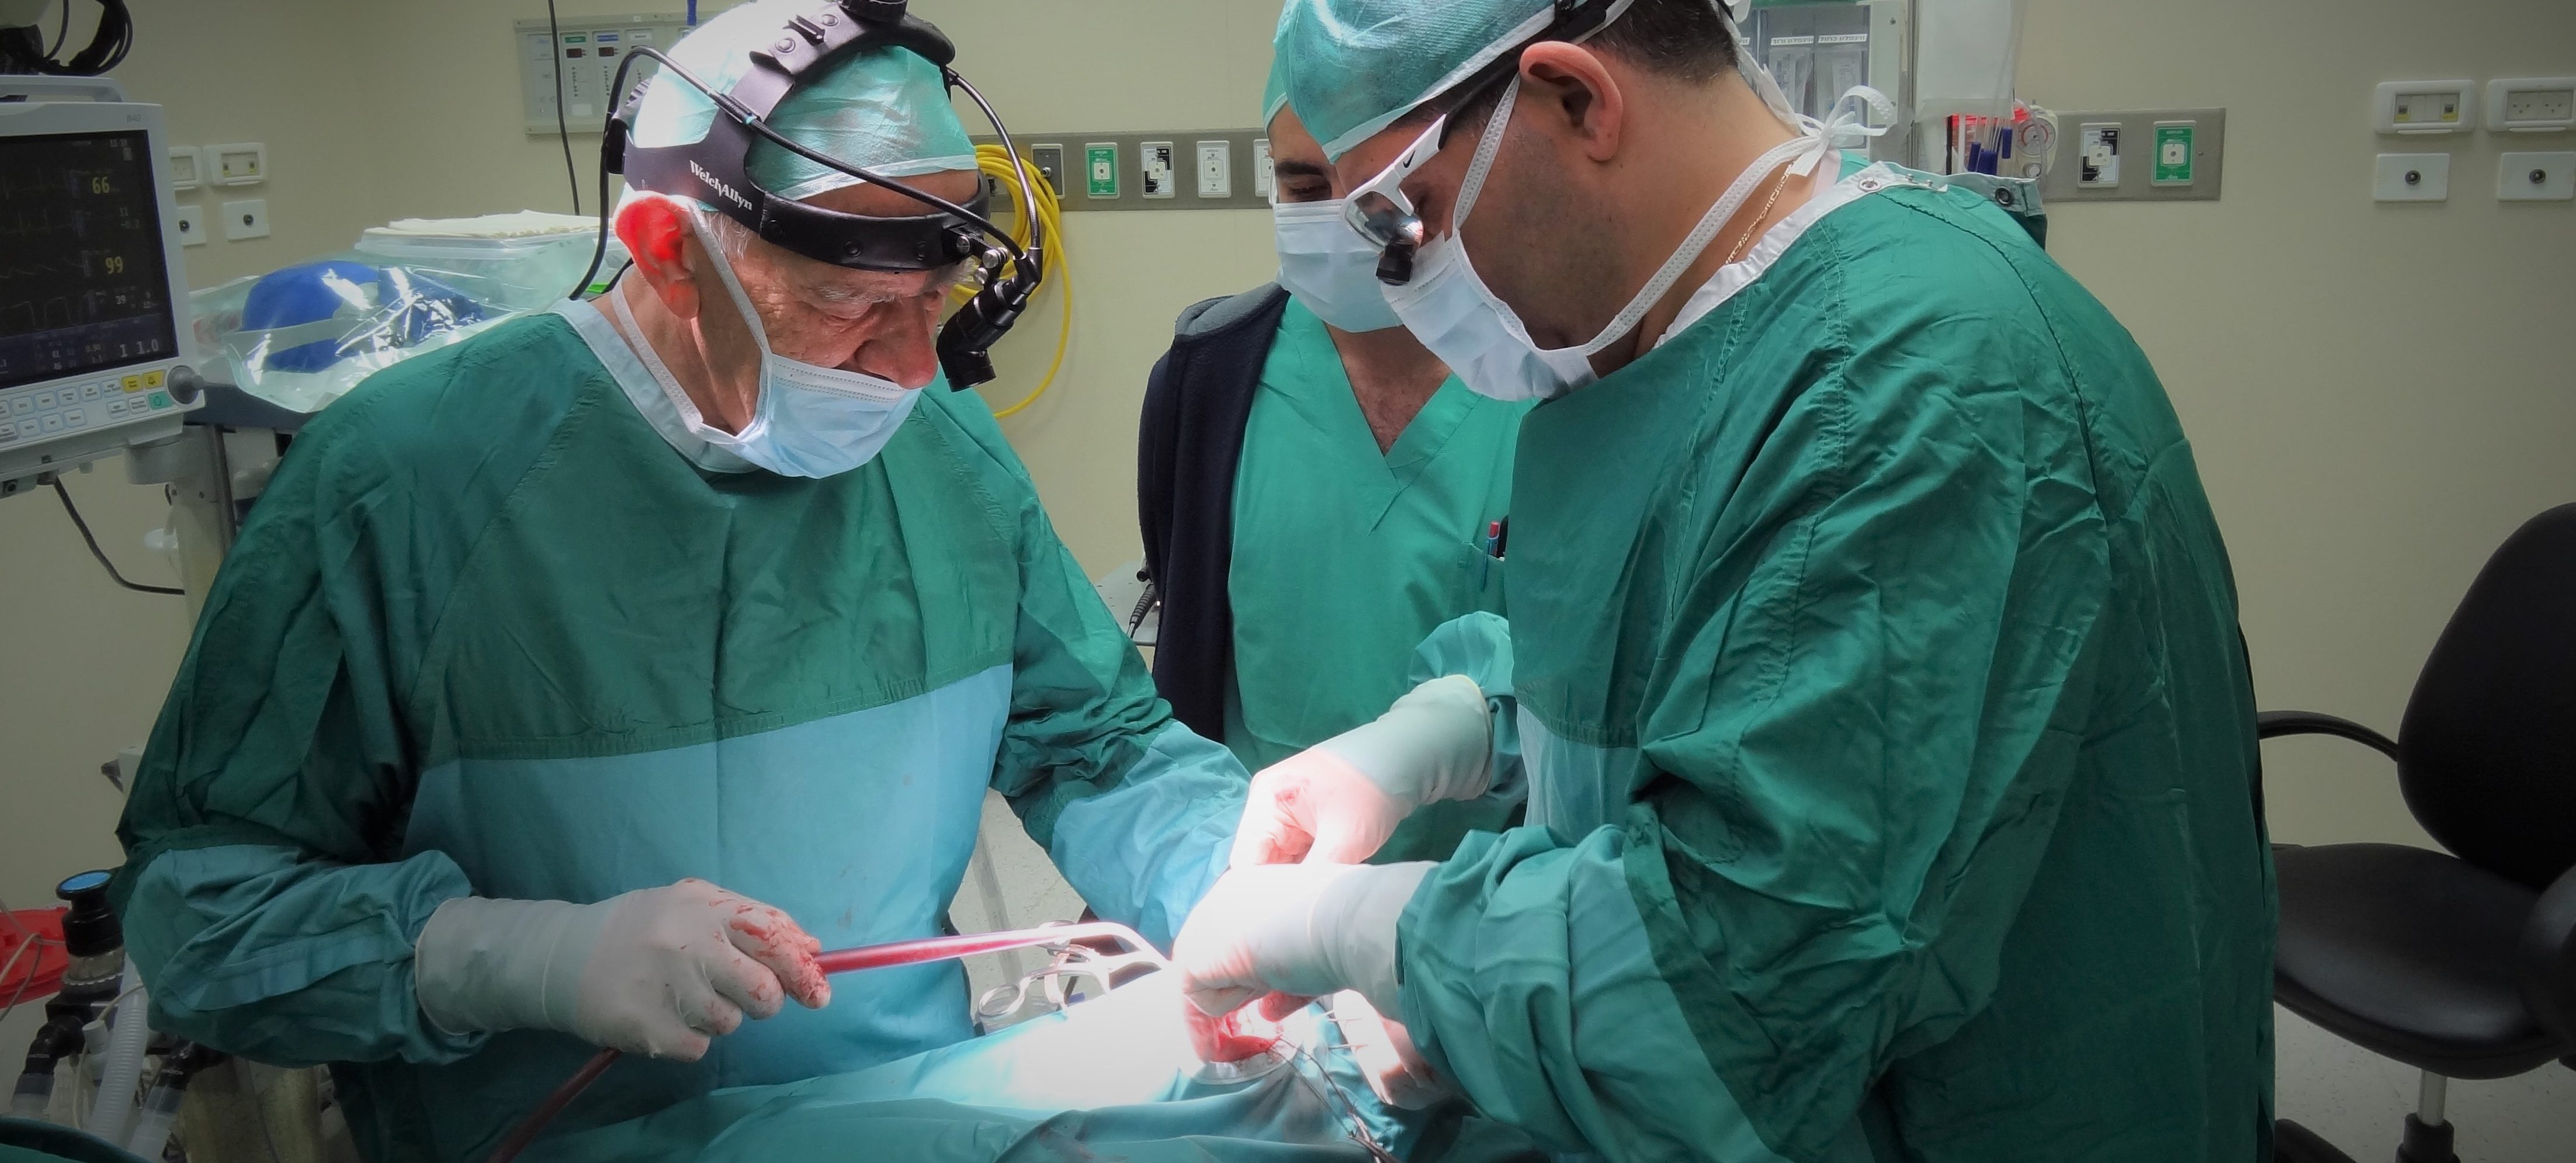 مجددًا مستشفى الناصرة الانجليزي في الصدارة  ولأول مرة في الشمال إجراء عملية معقدّة  بنجاح لاستبناء لمجرى البول